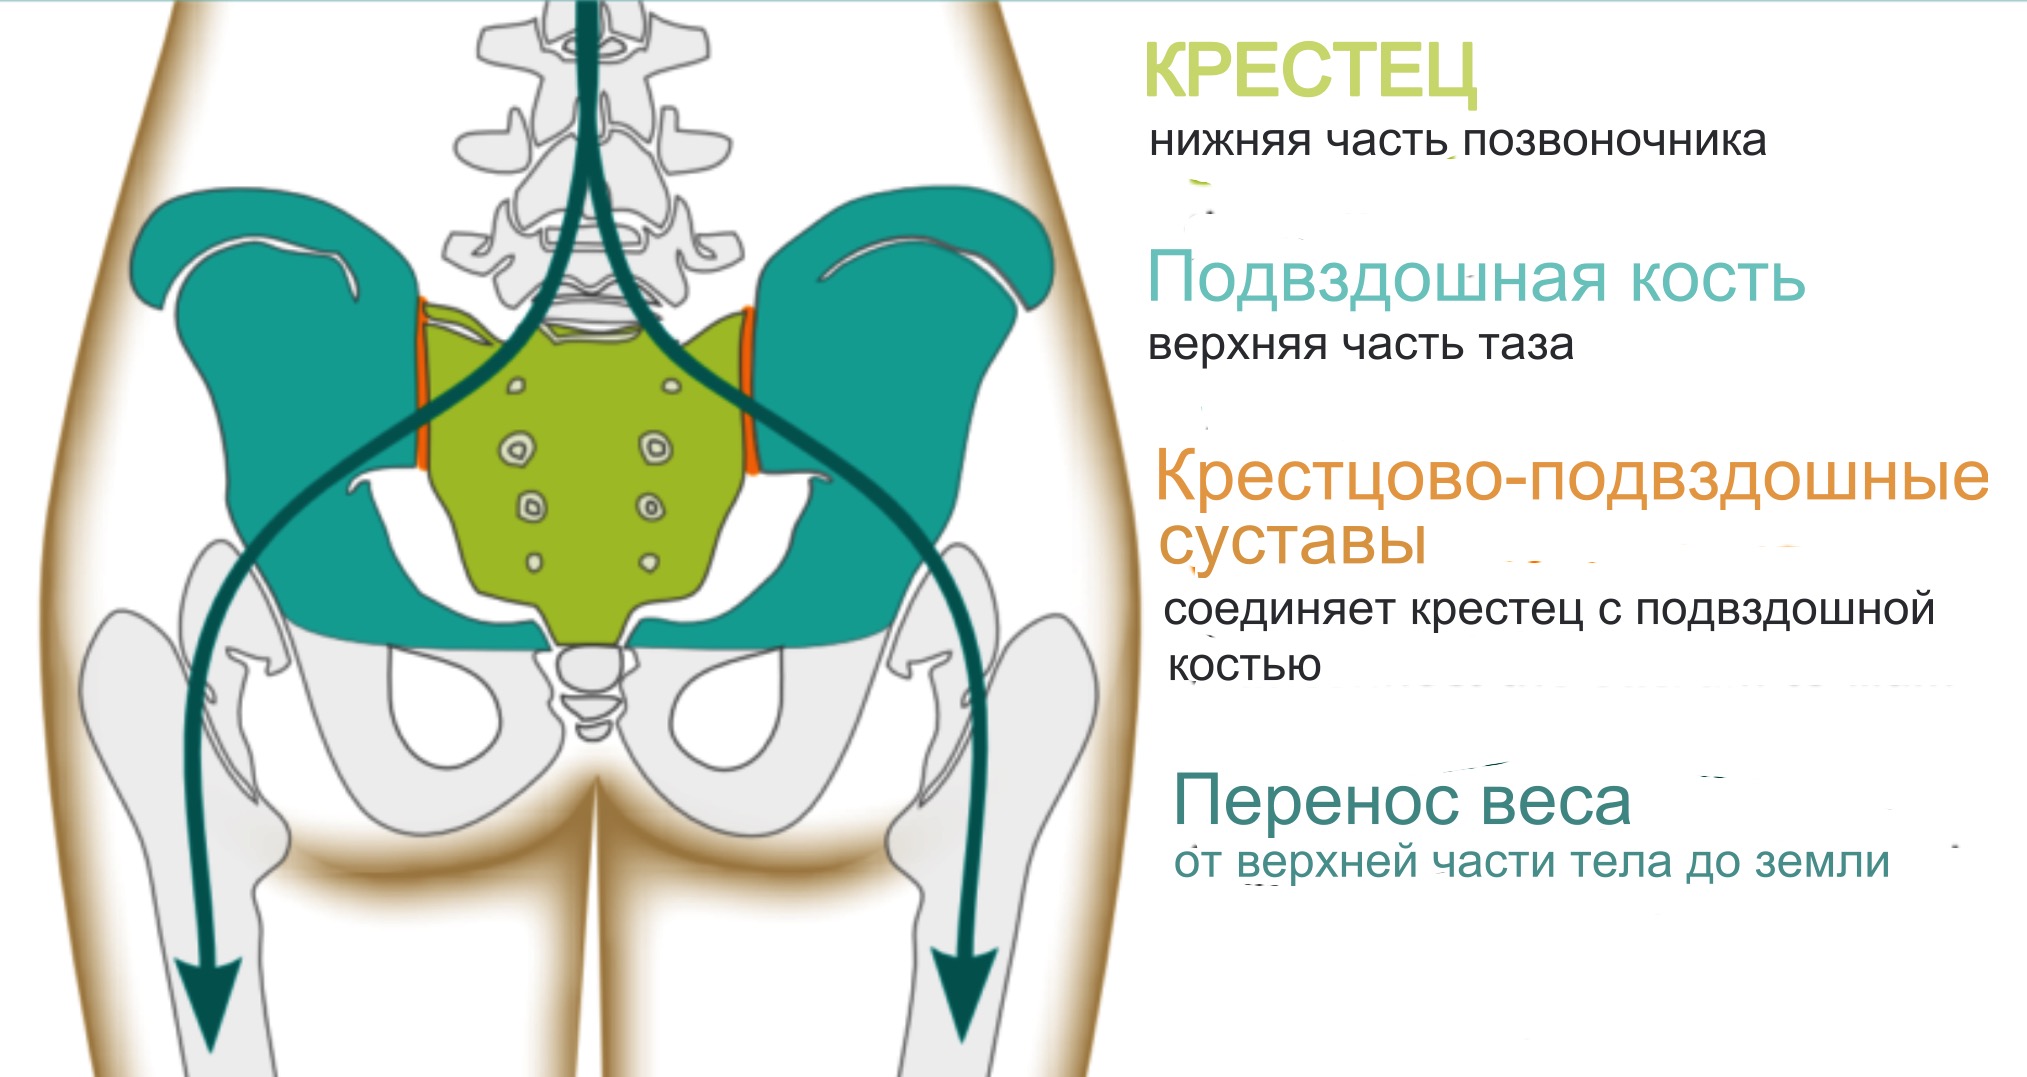 анатомия крестцово-подвздошных суставов